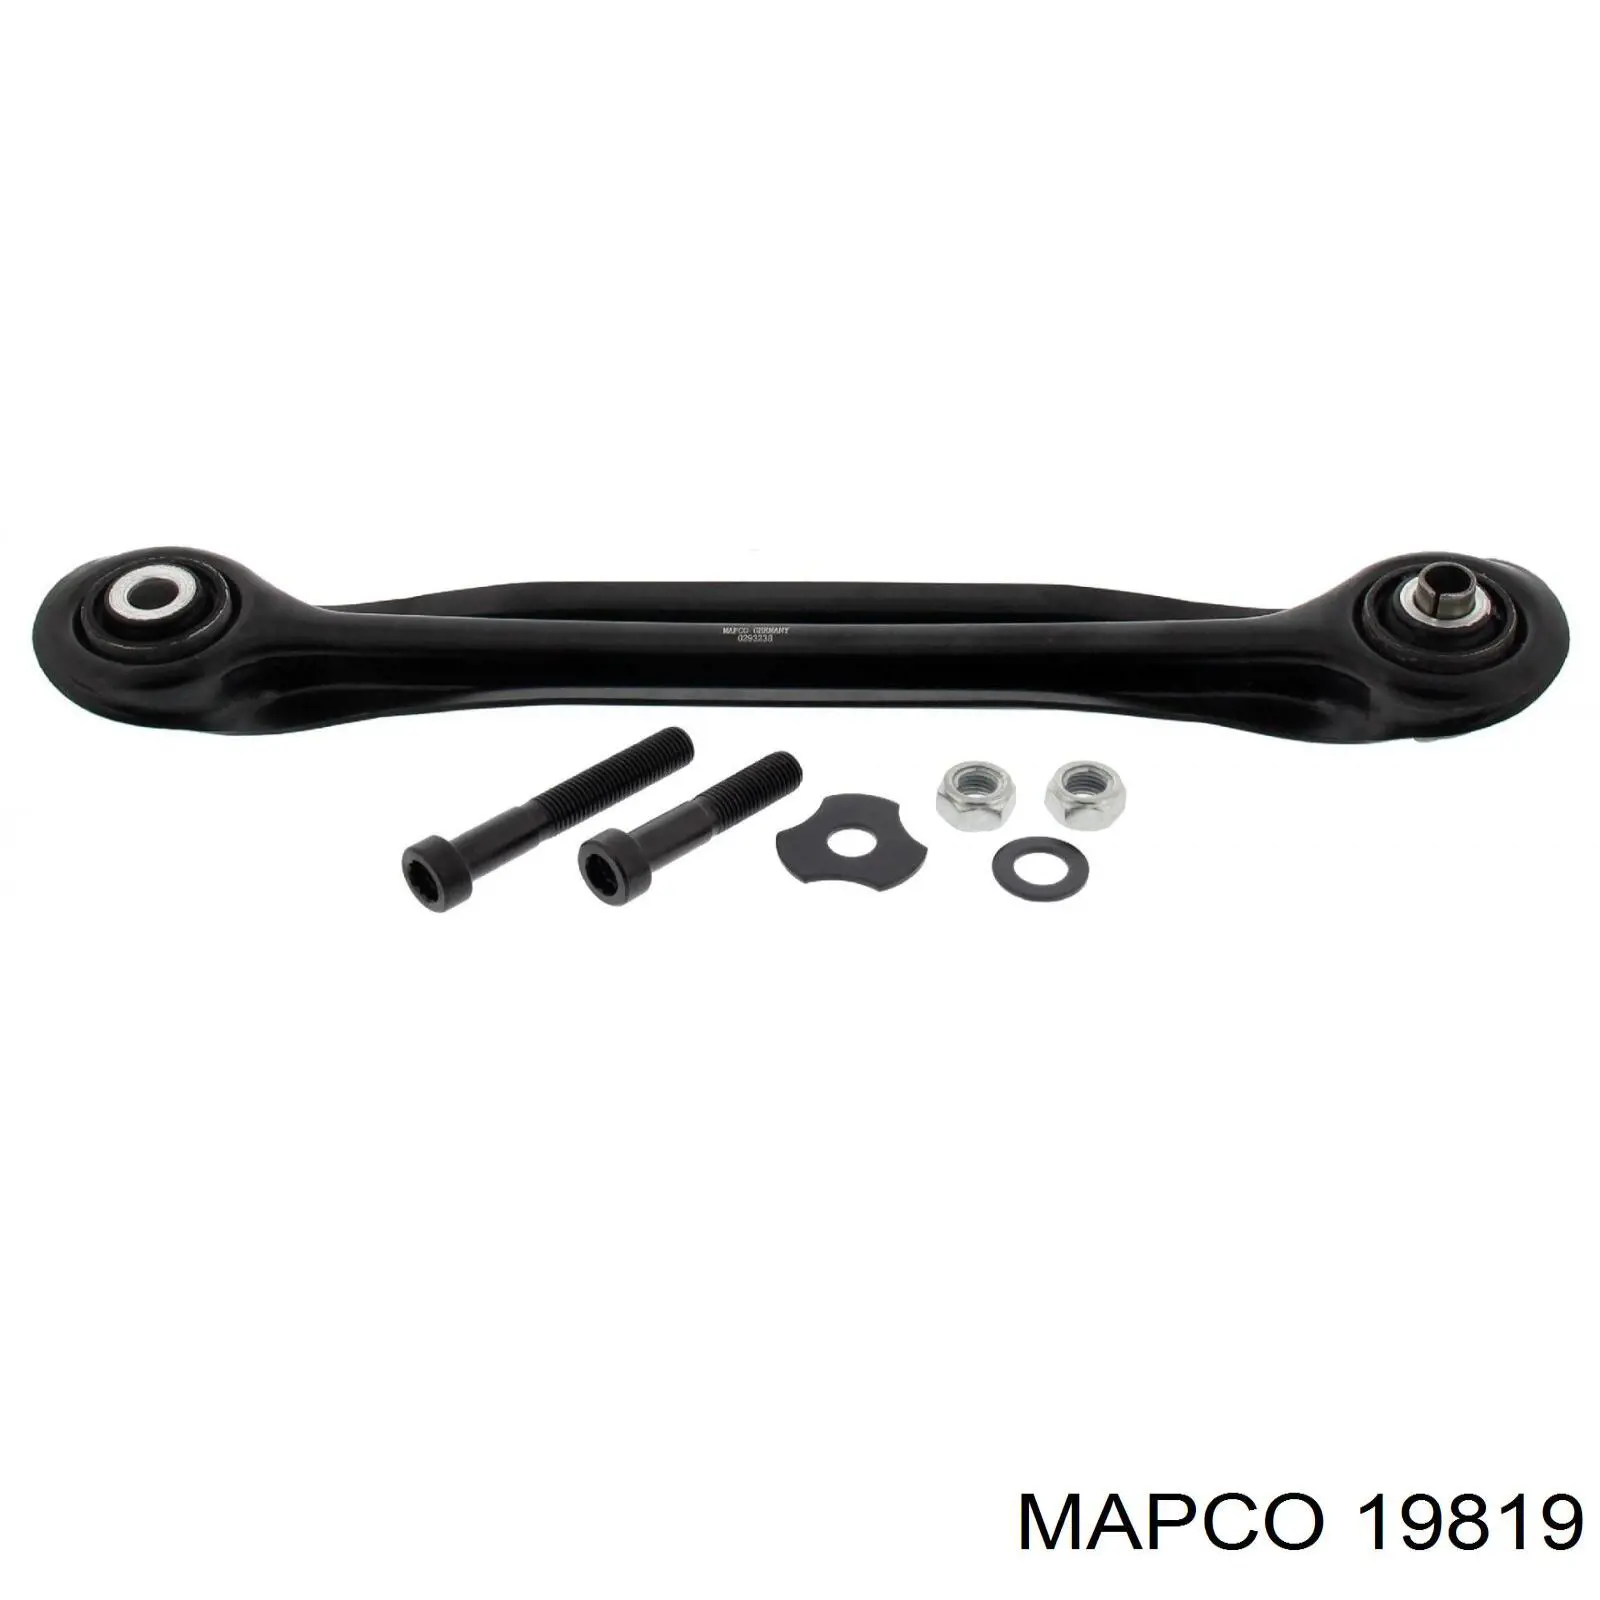 19819 Mapco palanca de soporte suspension trasera longitudinal inferior izquierda/derecha